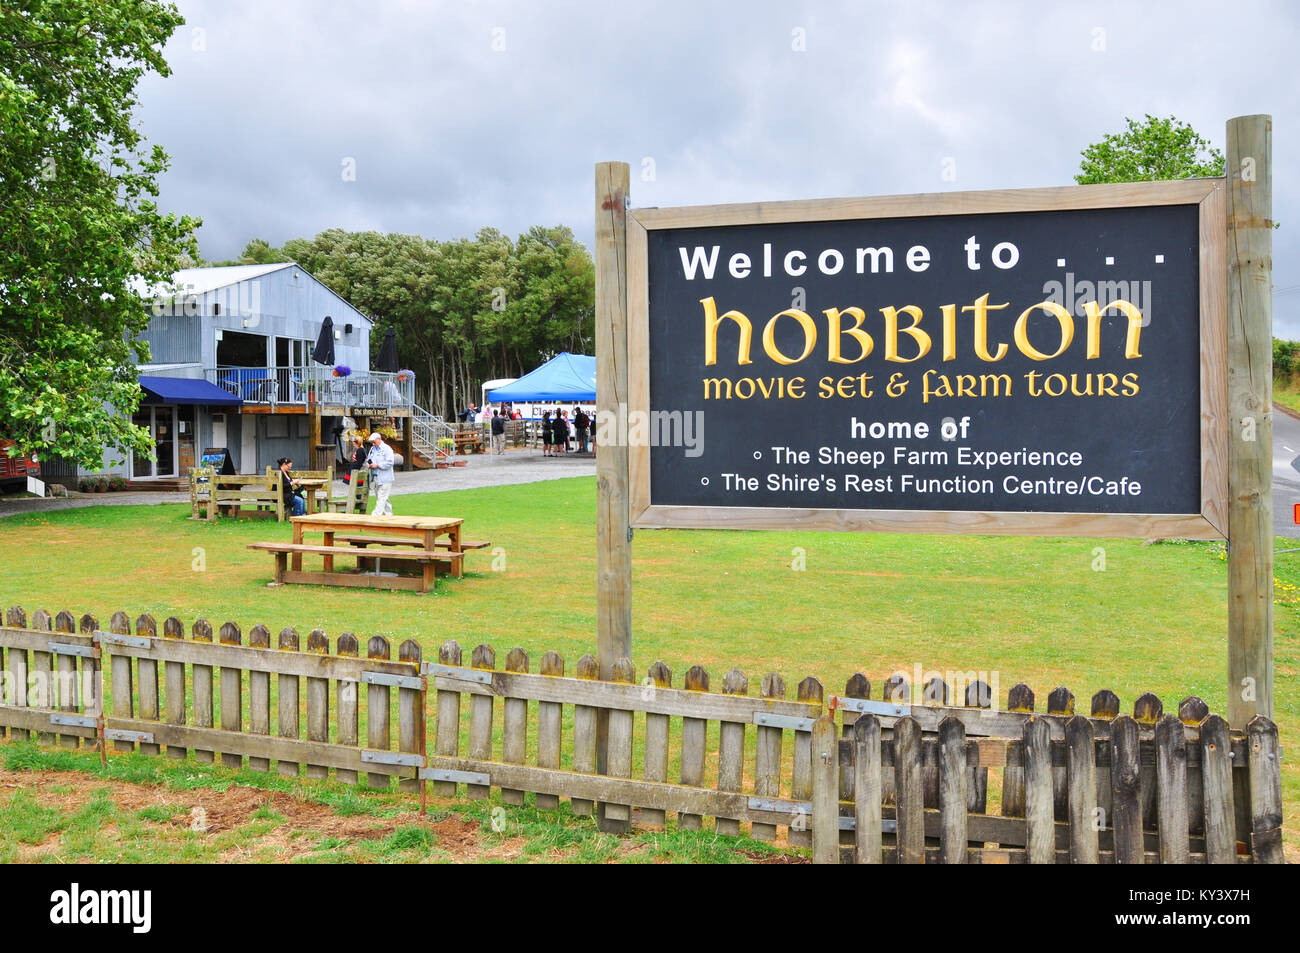 Hobbiton movie set Besucherattraktion in Ackerland in der Nähe von matamata Neuseeland. Visitor Center anmelden und Gebäude. Platz für Kopie Stockfoto